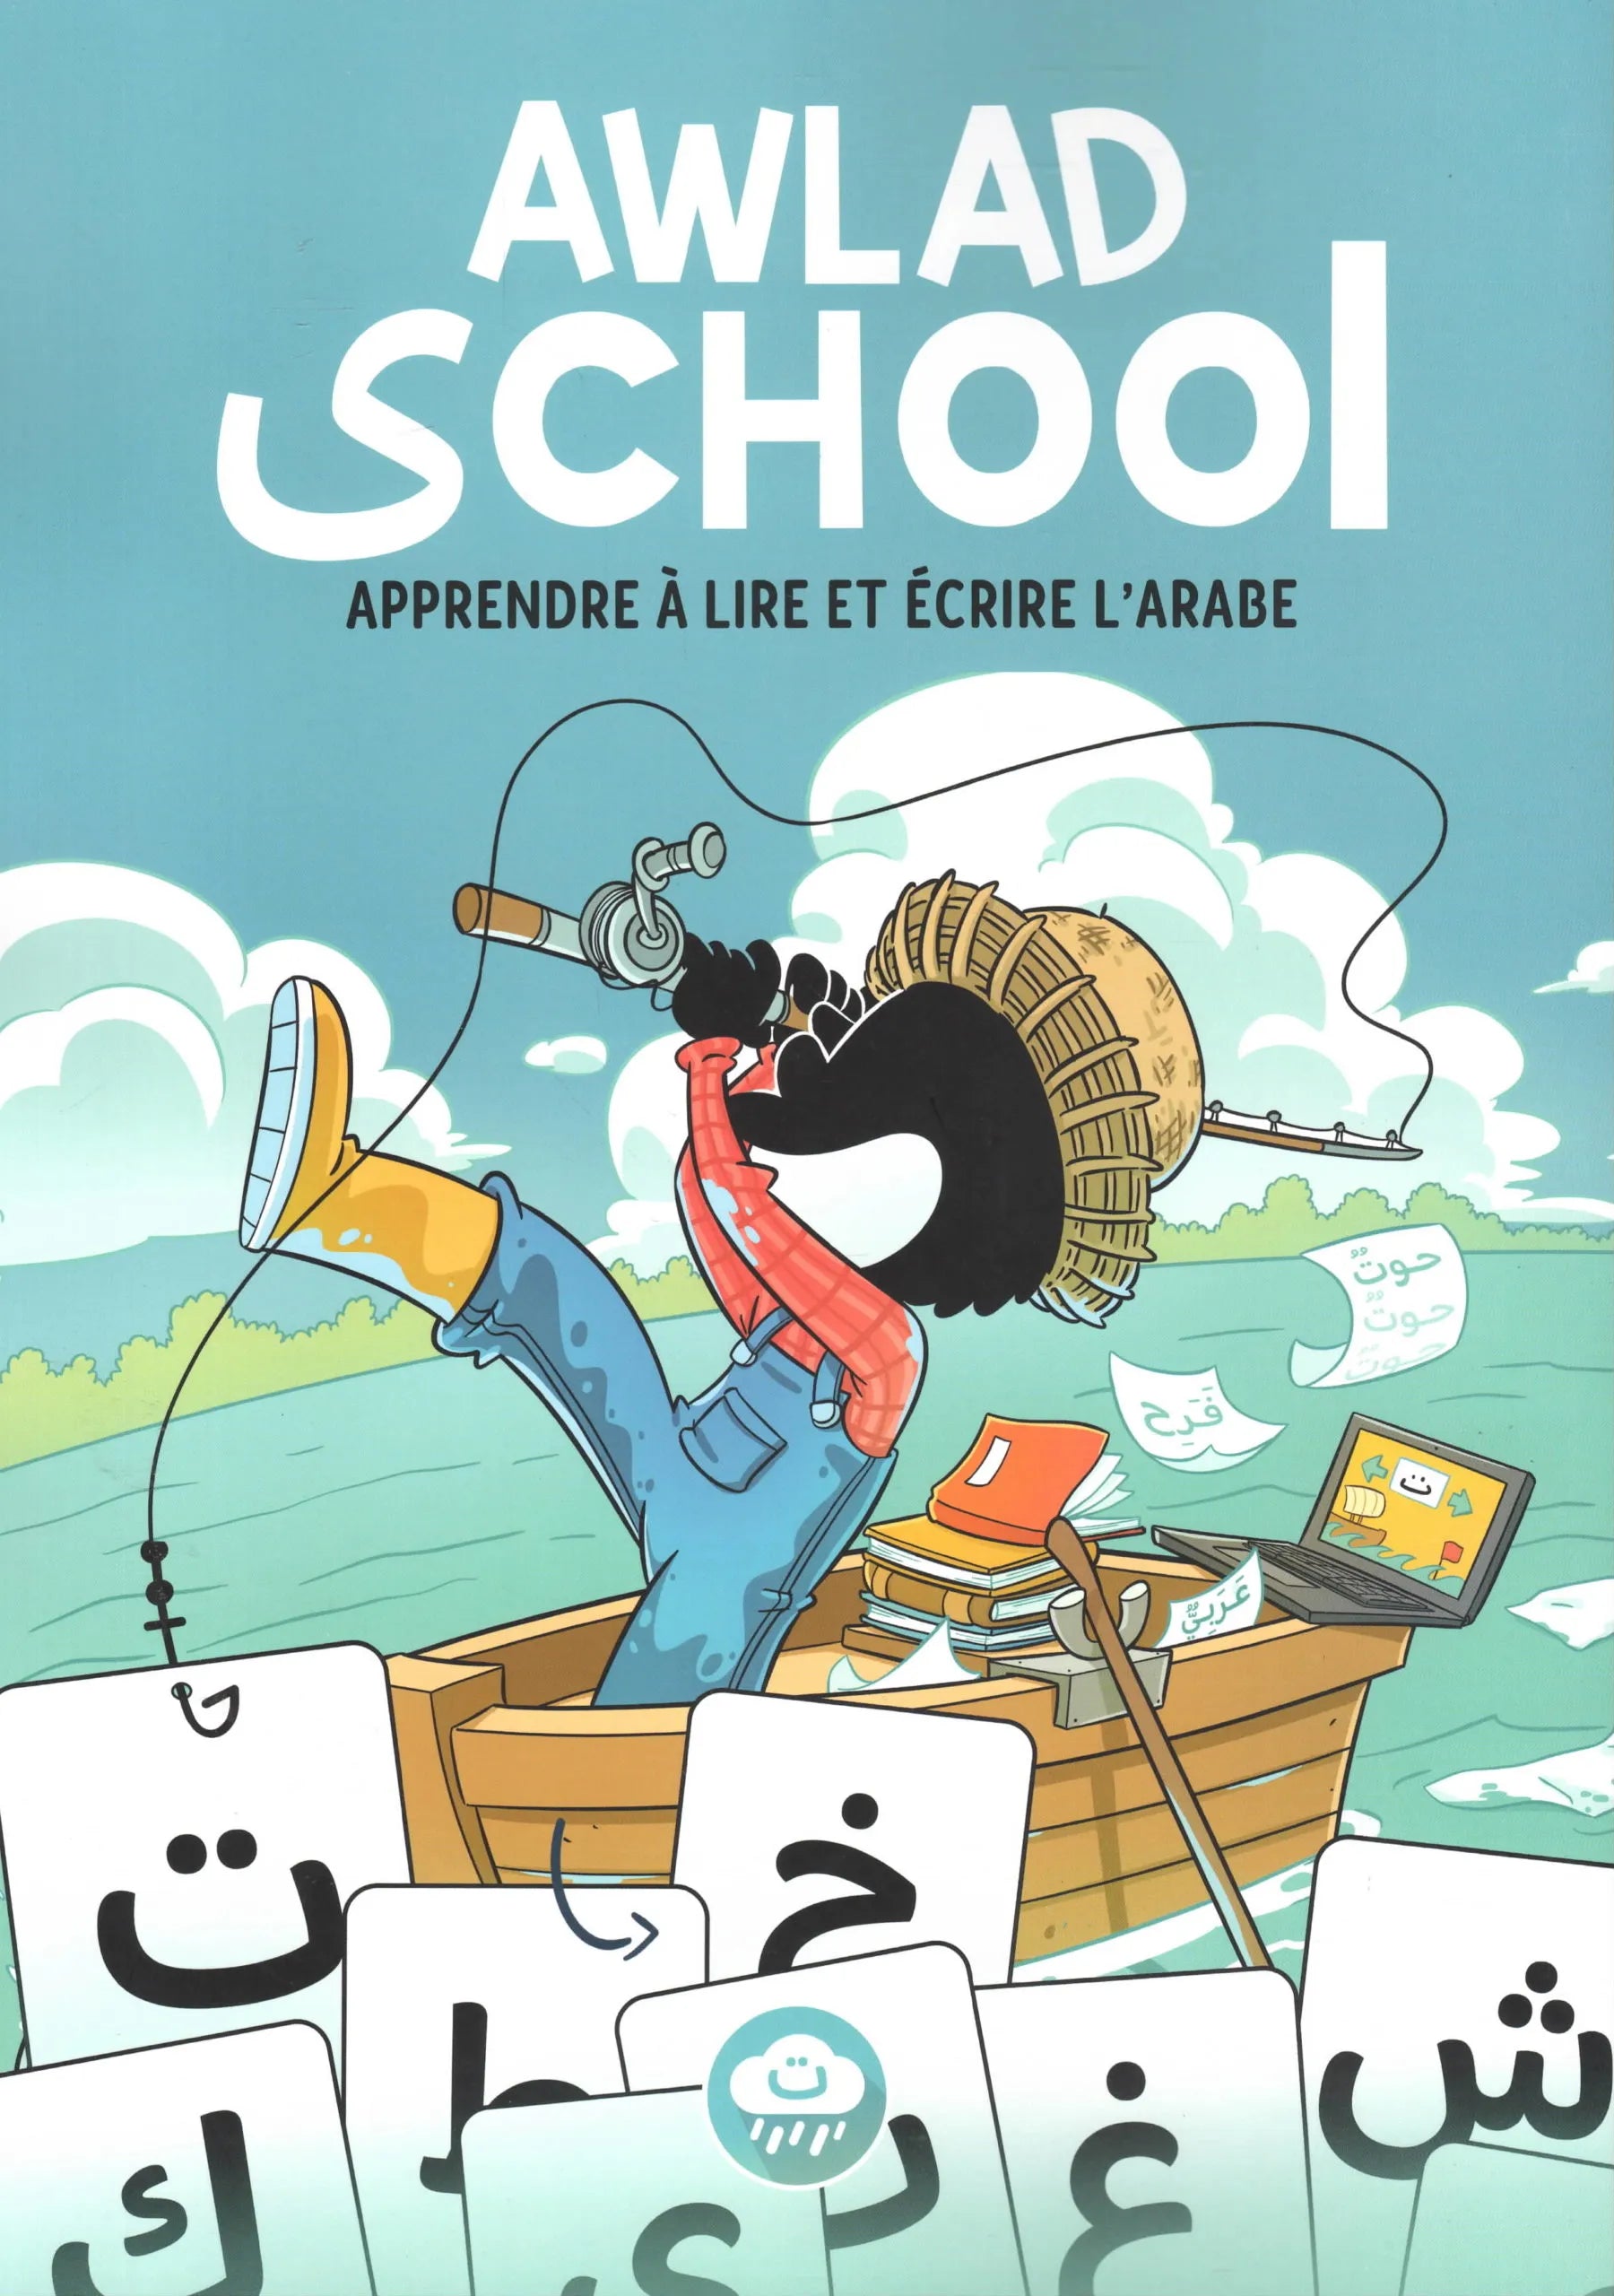 Awlad School – Apprendre à lire et écrire l’arabe - Éditions BDouin